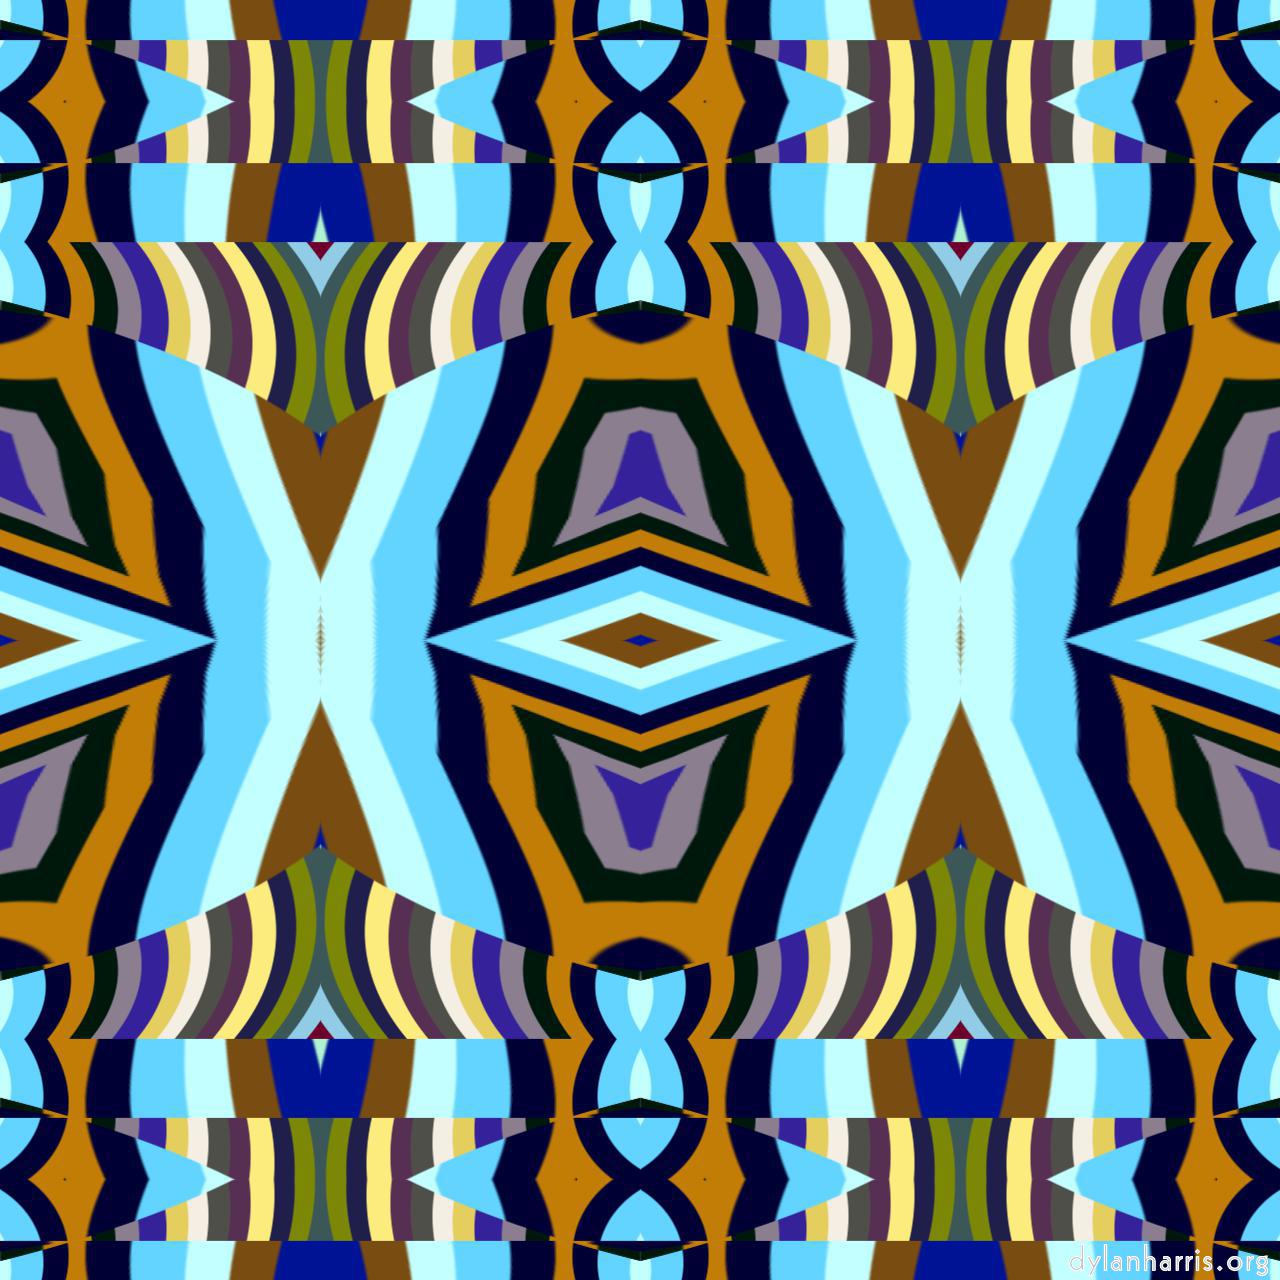 variations :: tapestry